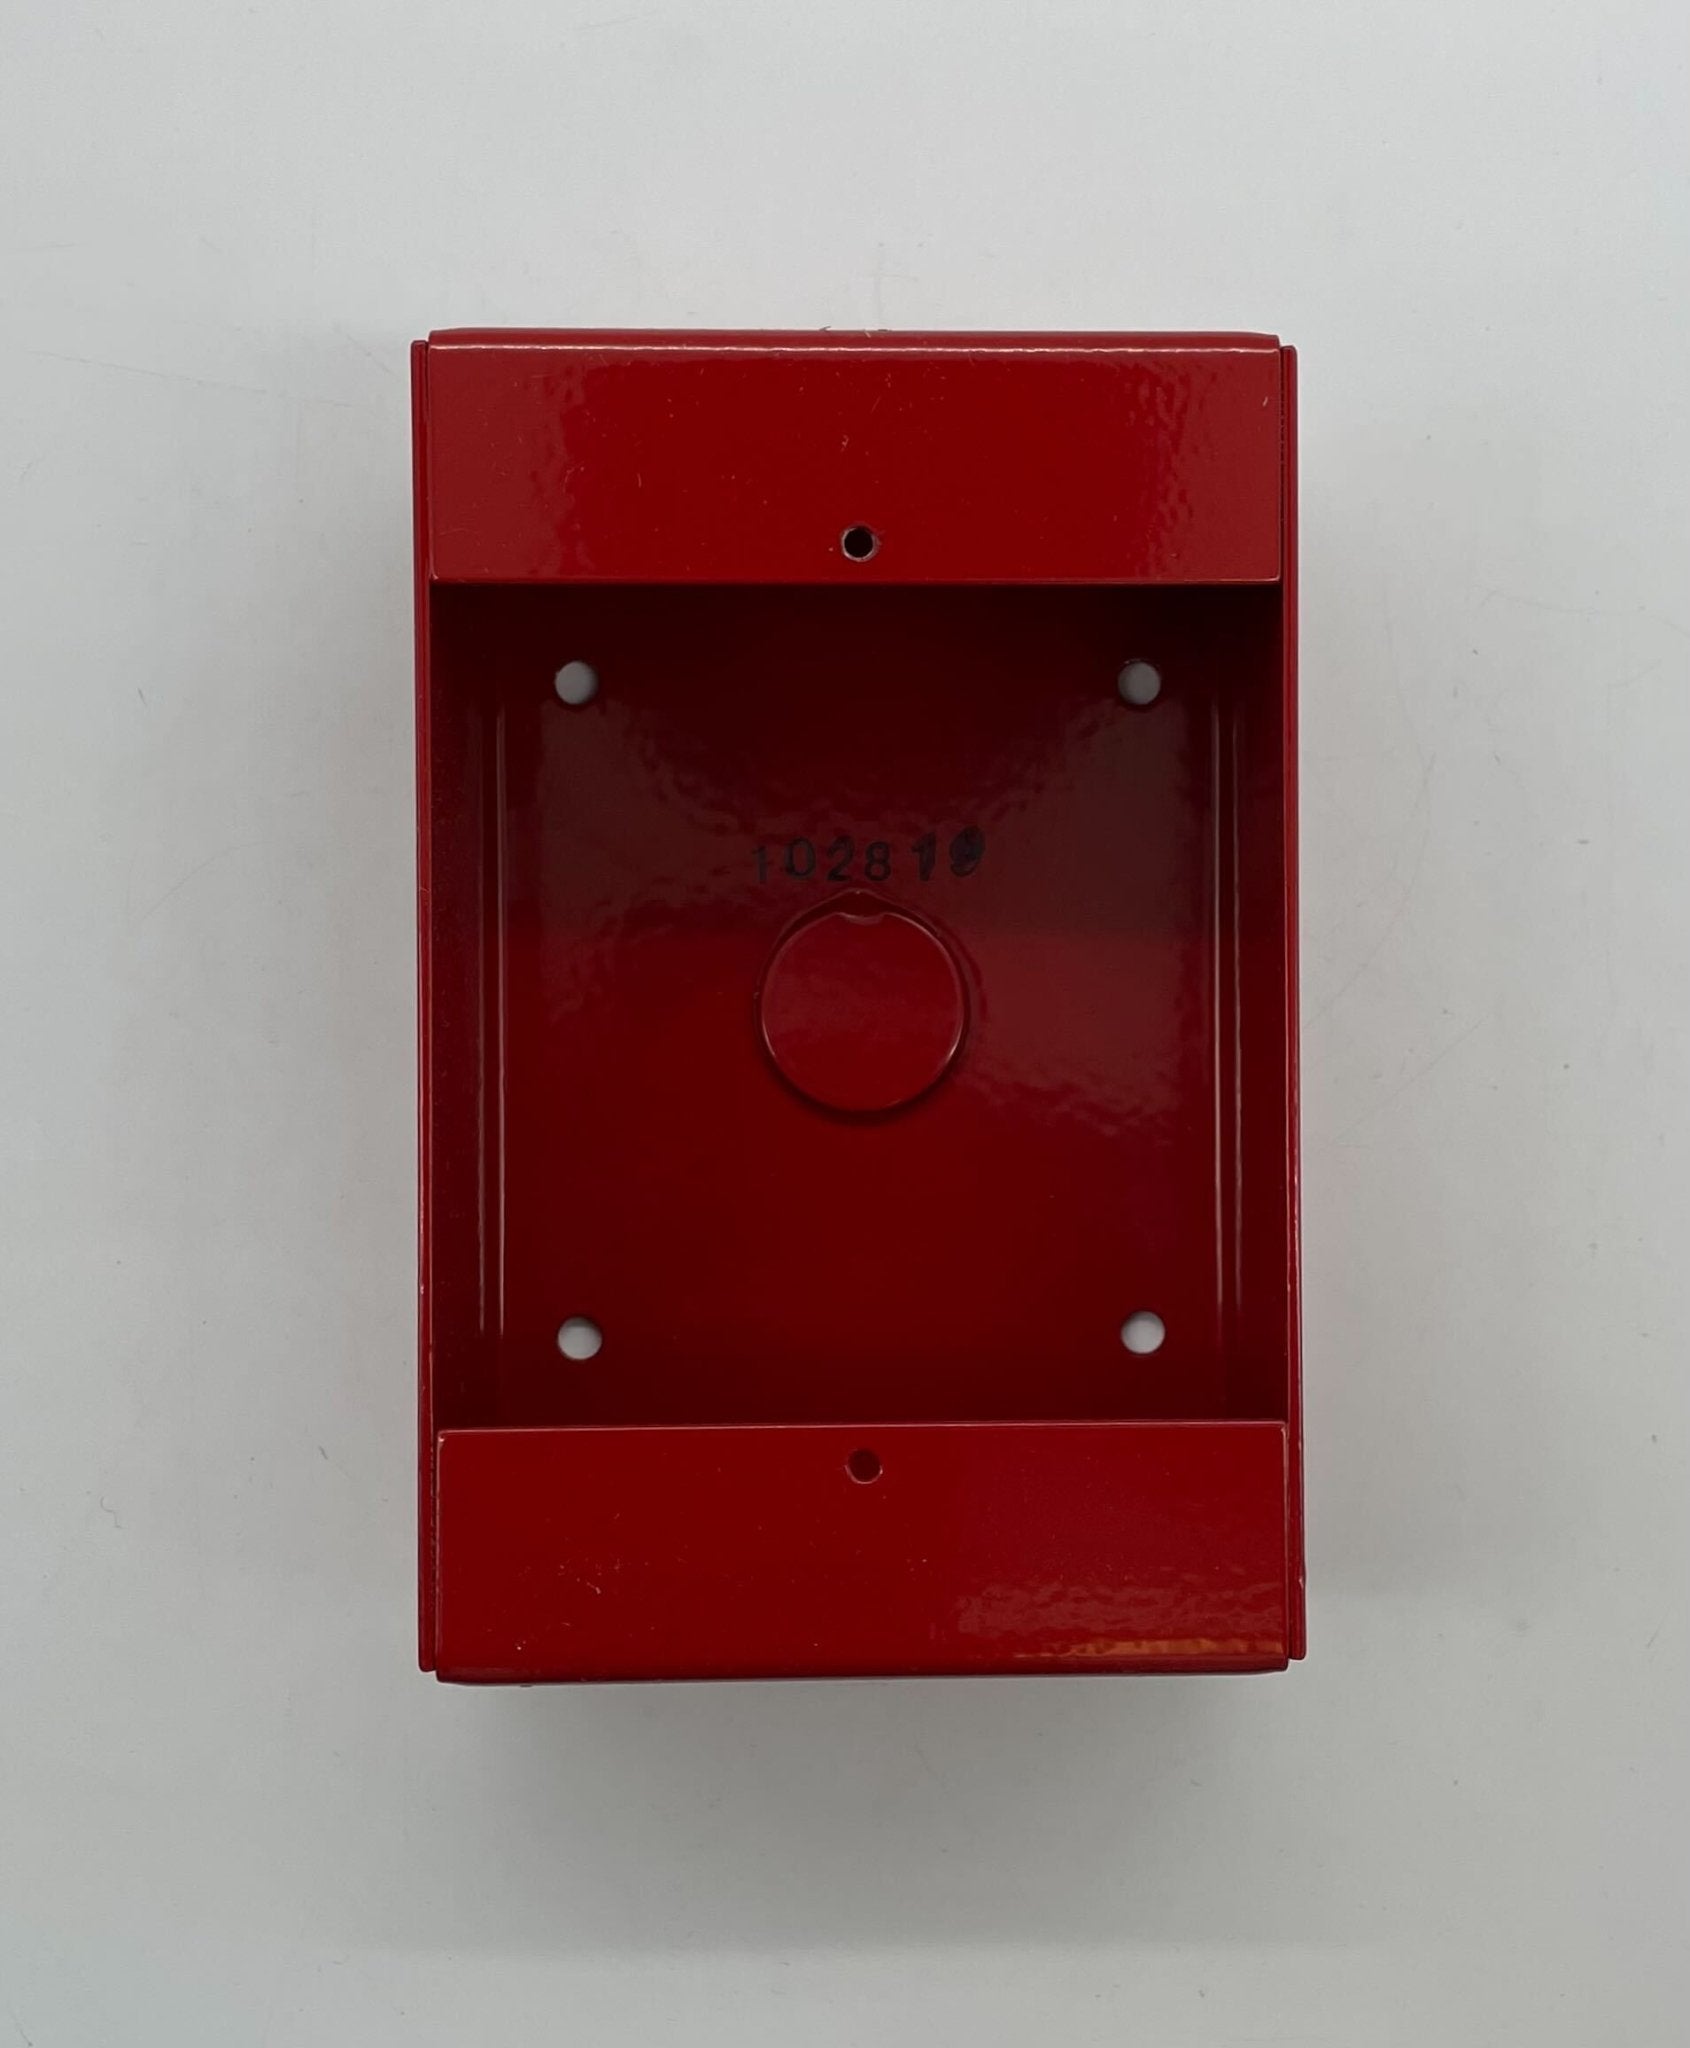 Siemens MSM-BOX - The Fire Alarm Supplier